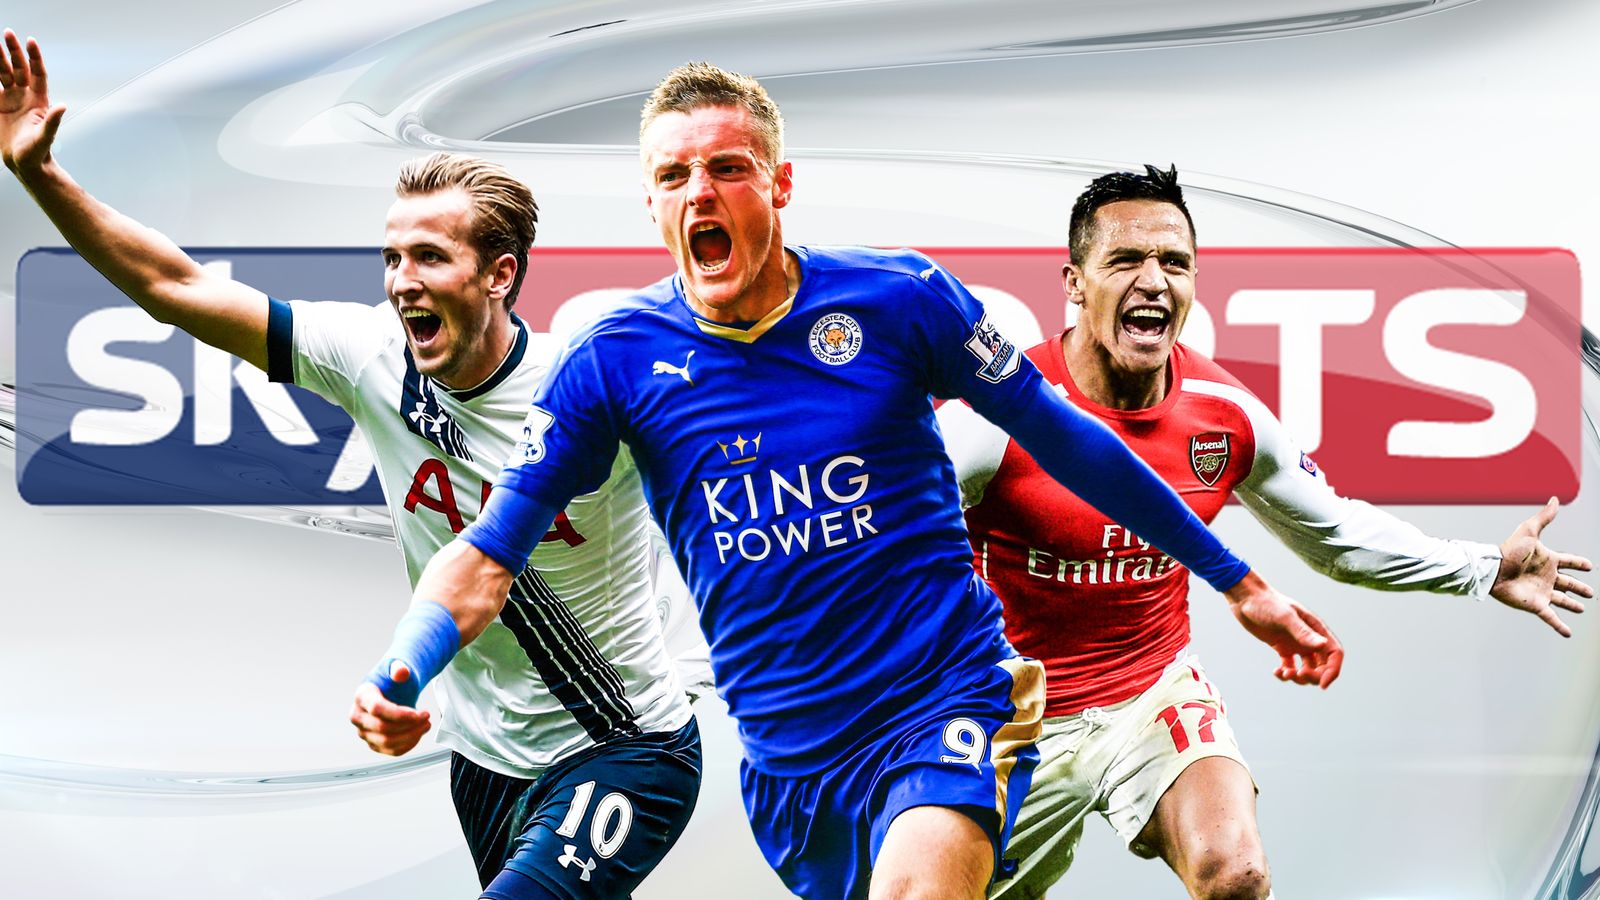 M sport футбол. Sky Sports Premier League. Sky Sports Football. Sky Sports Football presentation.